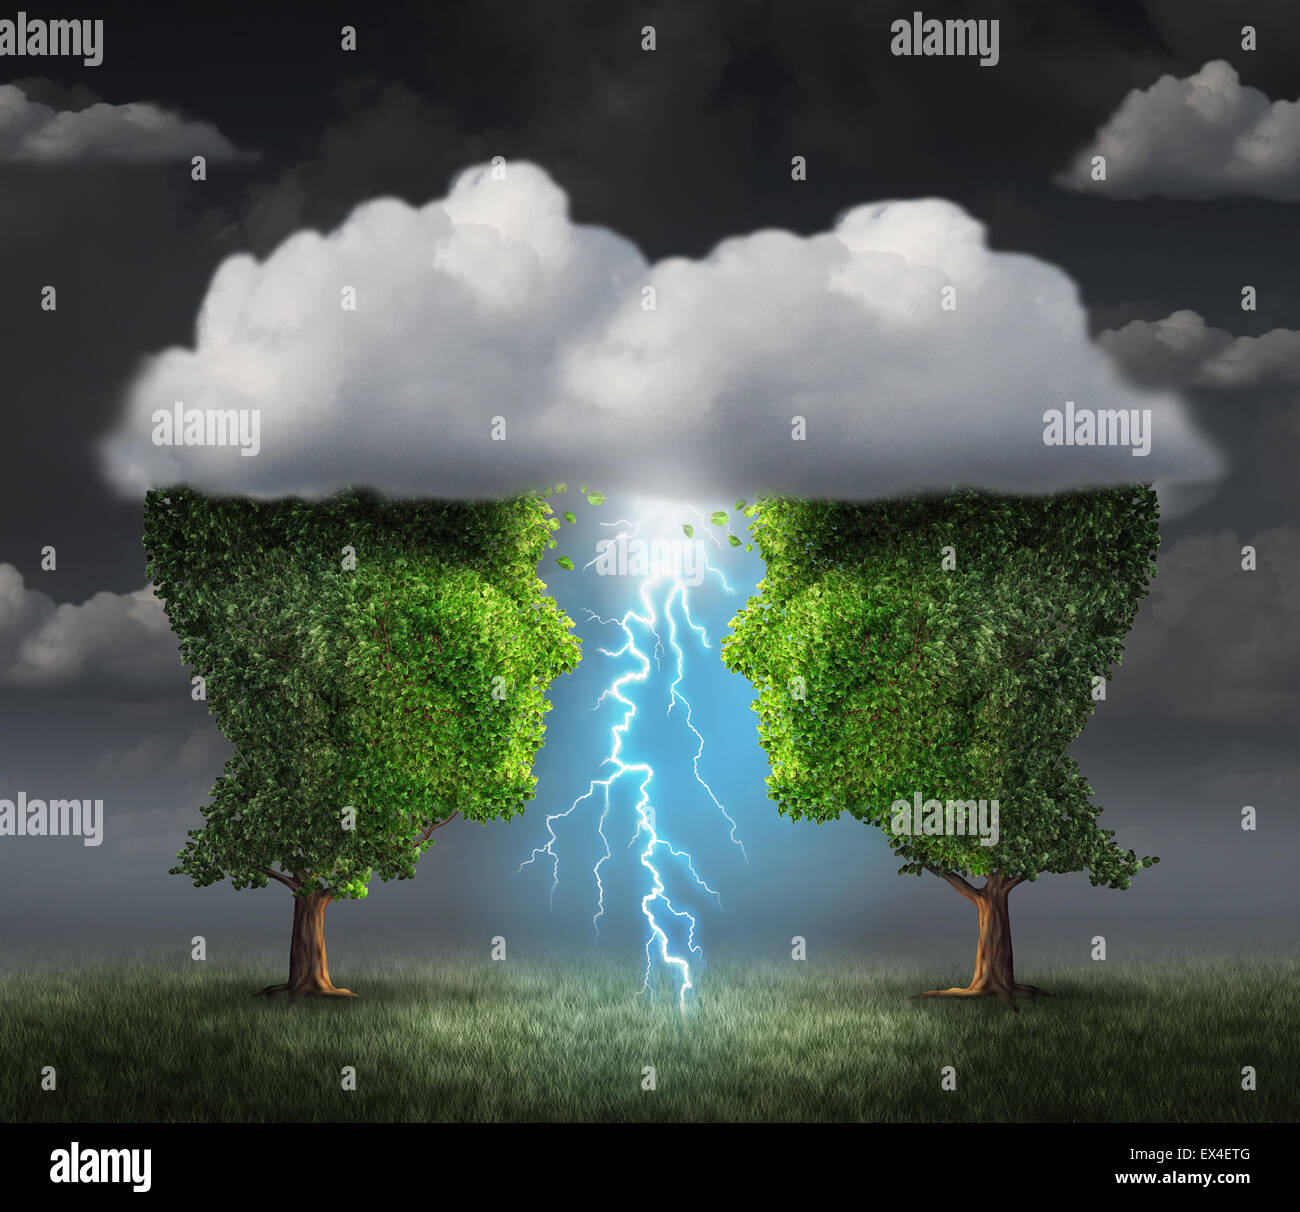 Funke Idee Geschäftskonzept als zwei Bäume geformt wie ein Kopf unter einer Gewitterwolke einen Blitz Blitz als symbiotische Erfolg Metapher und kreative Zusammenarbeit Einheit zu schaffen. Stockfoto